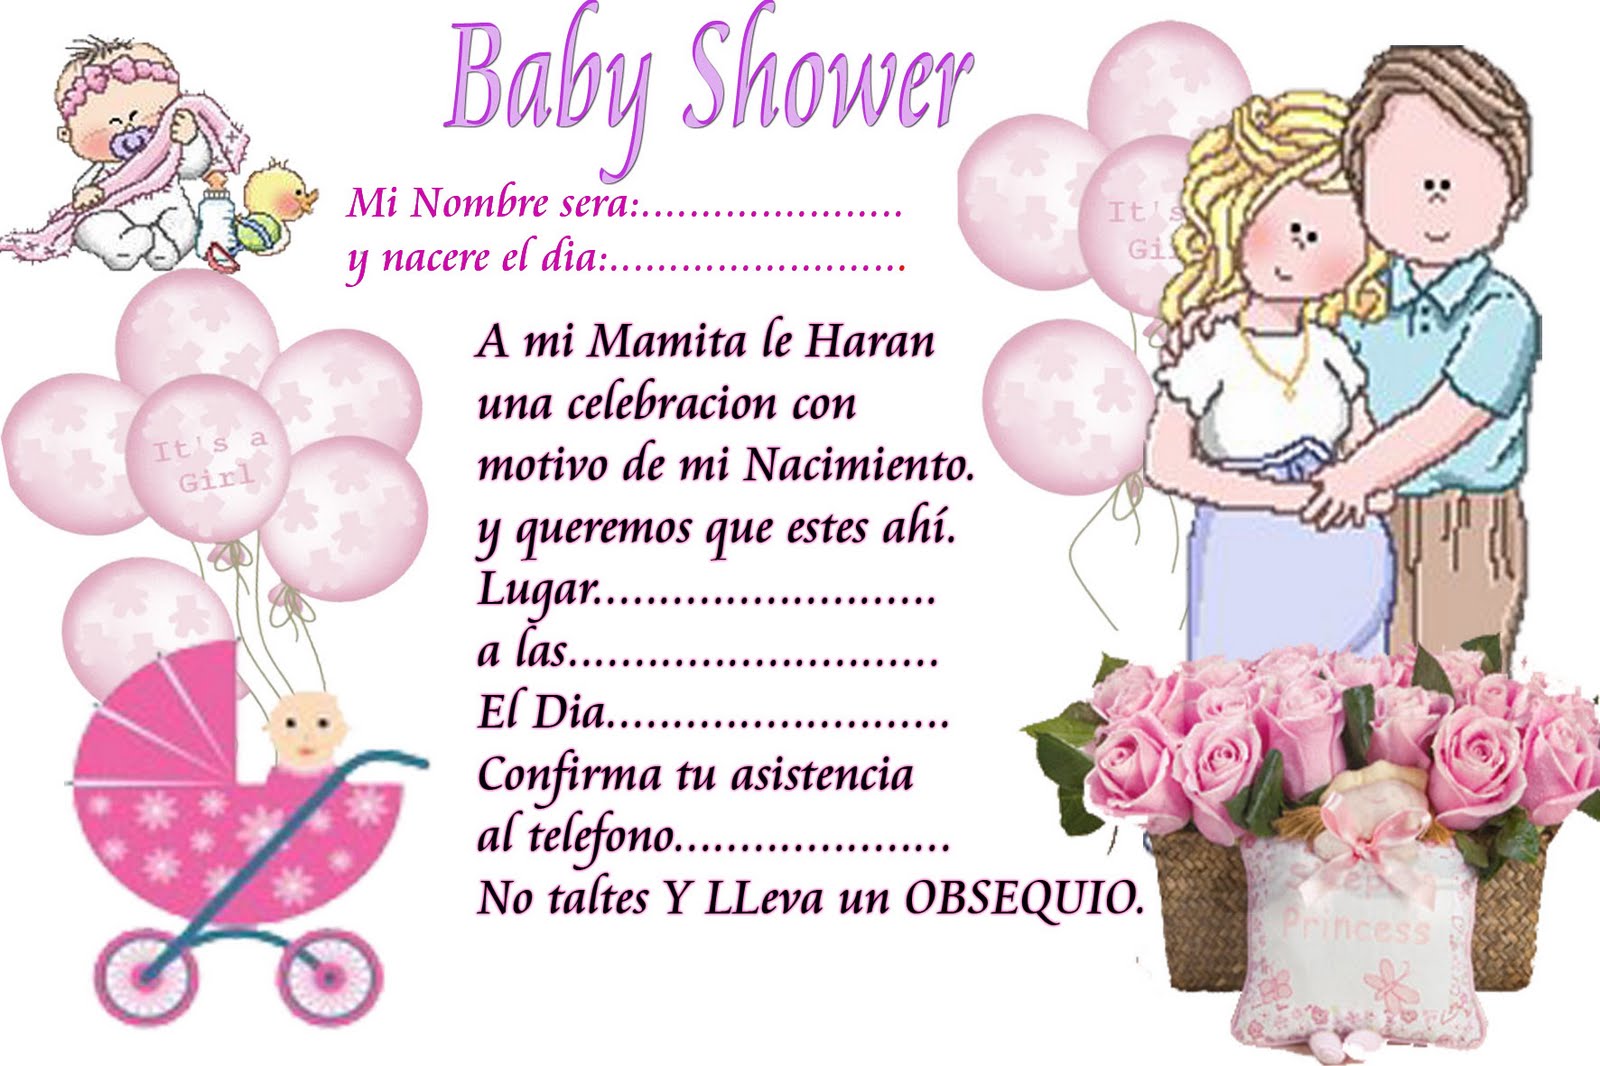 Juegos Originales Para Baby Shower